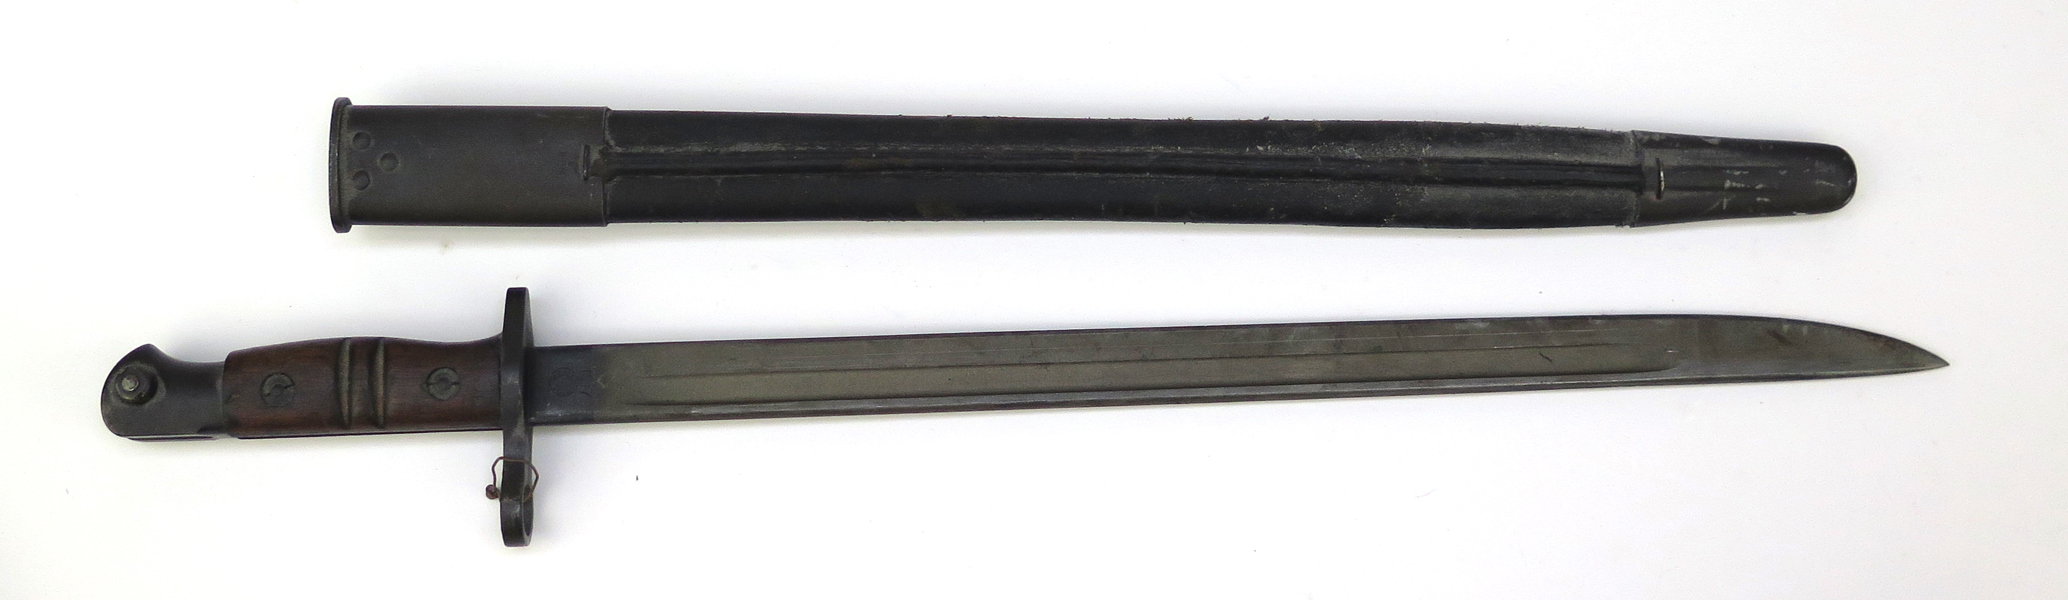 Bajonett, i balja, Remington, längd med balja 58 cm_28980a_8db6c06460e4a92_lg.jpeg